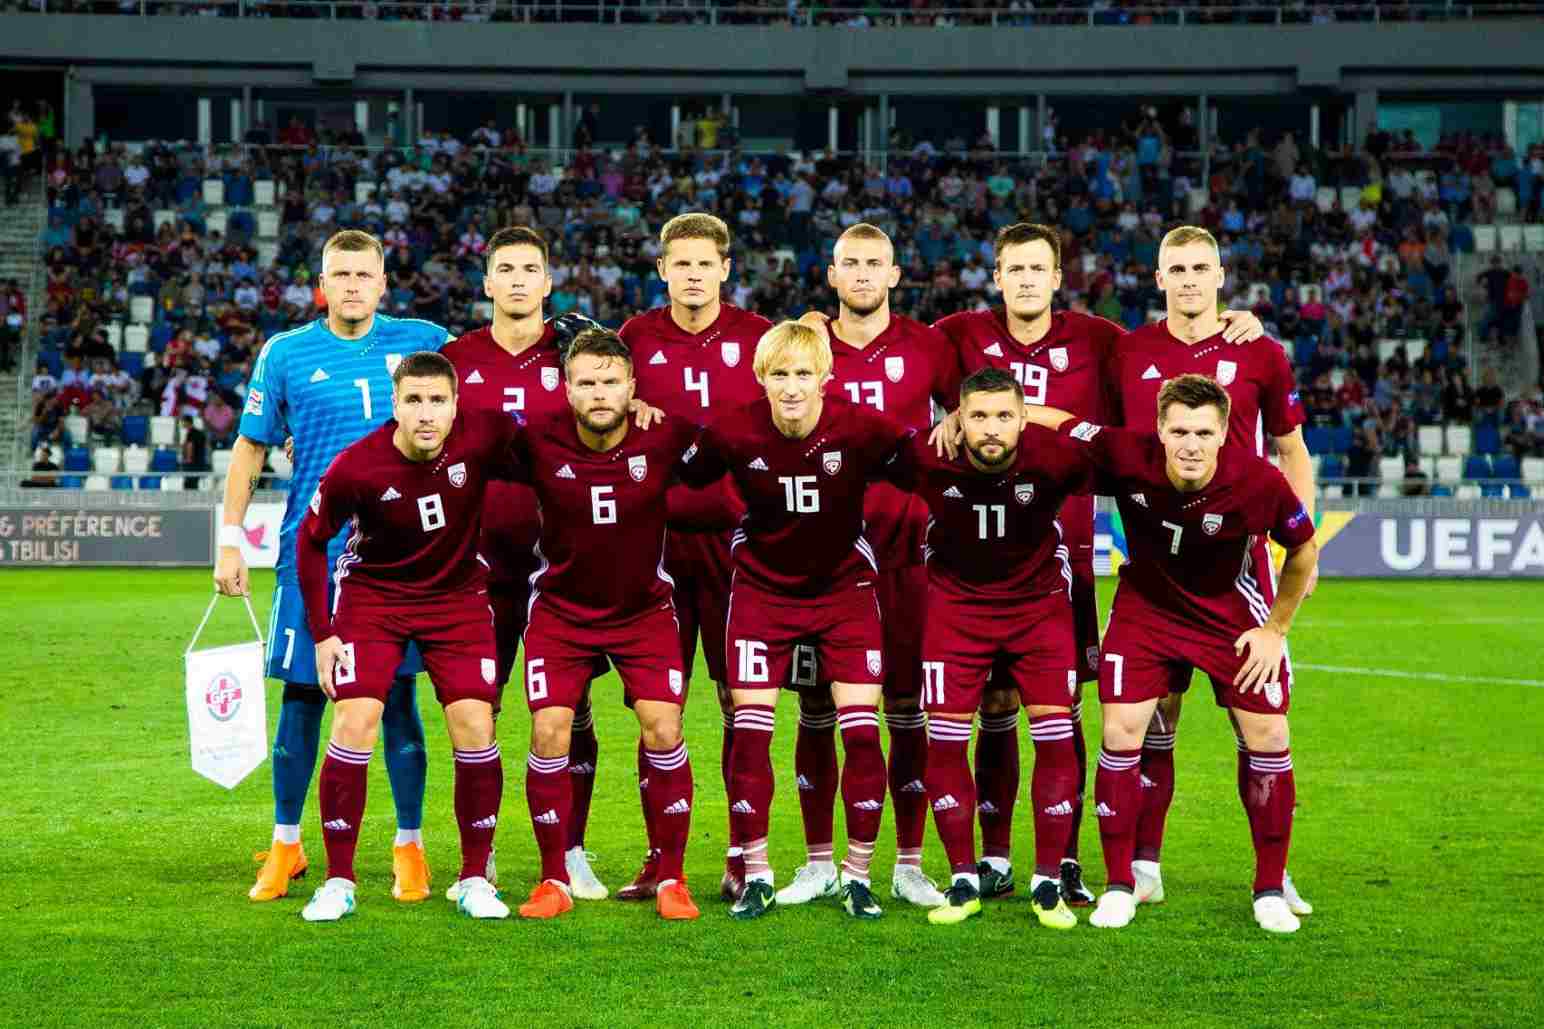 Latvia vs Thổ Nhĩ Kỳ